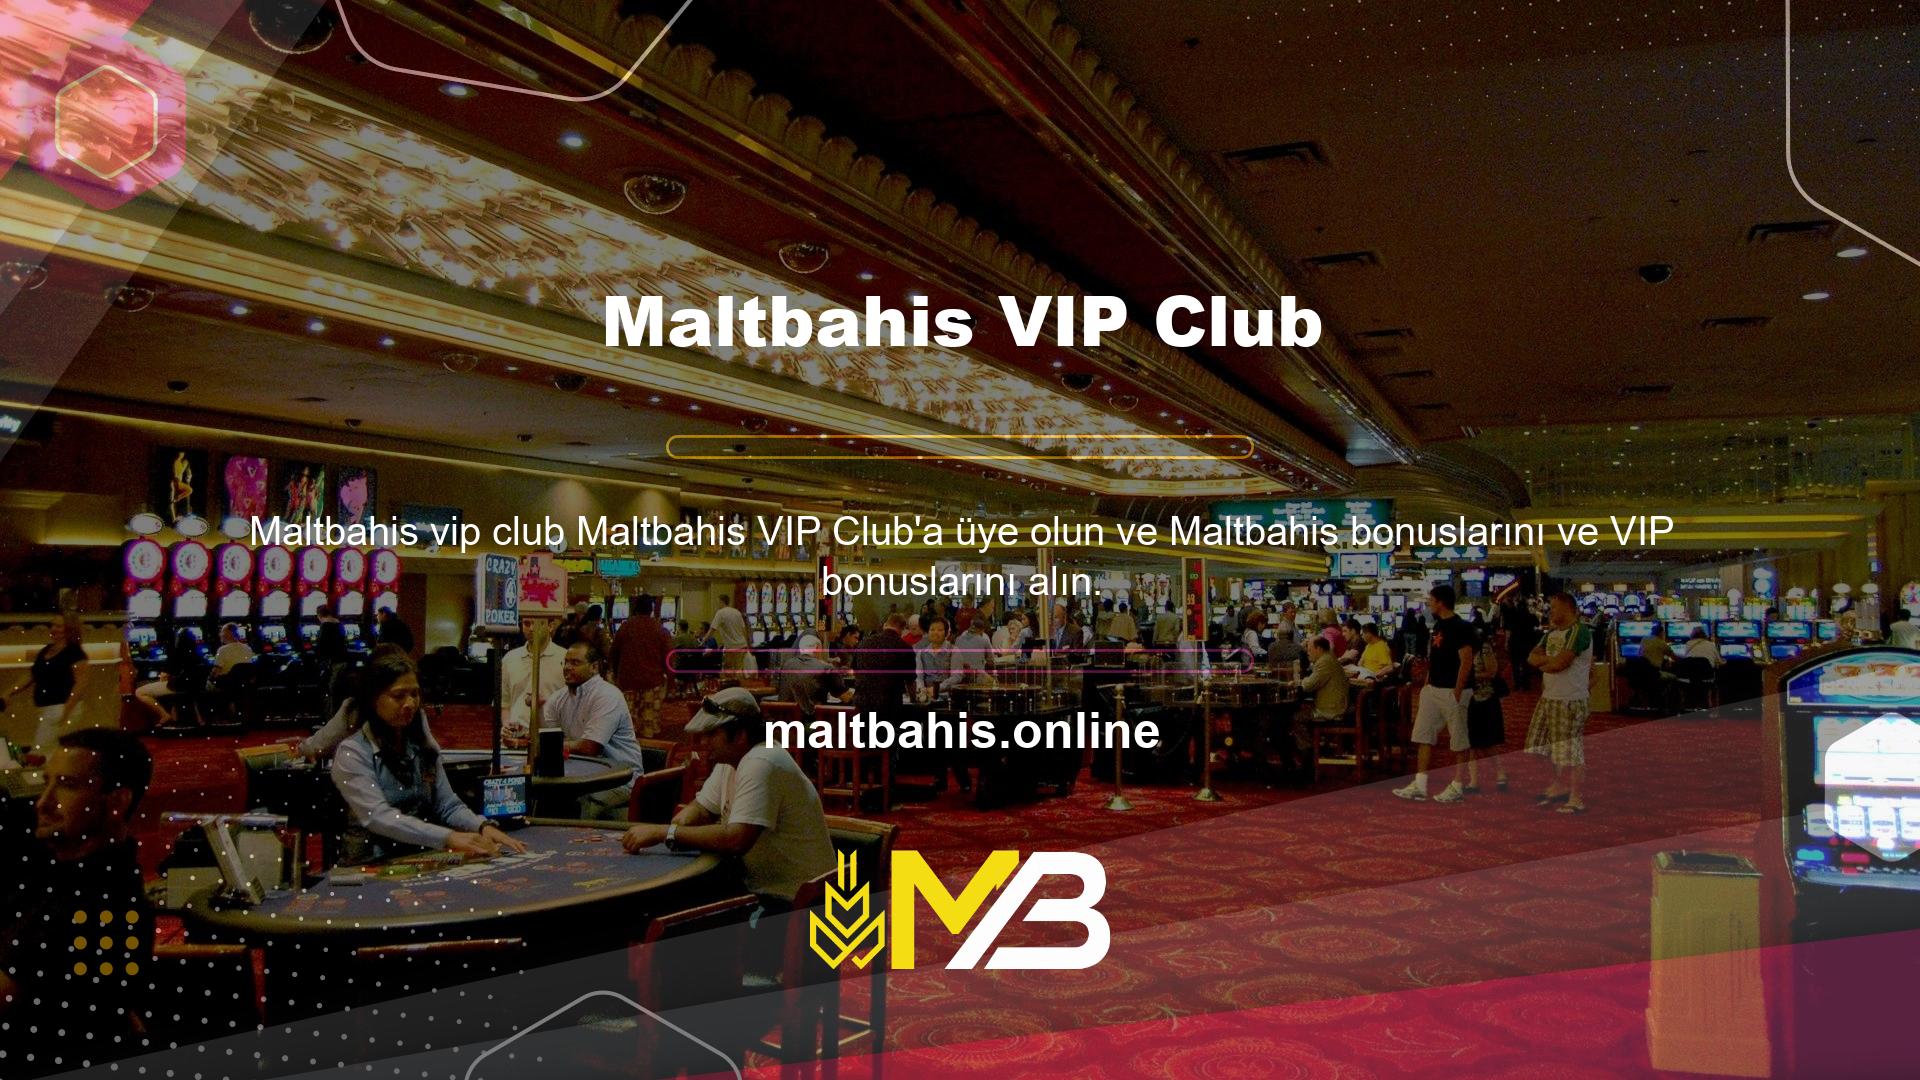 VIP Club ve VIP Store sistemi, VIP'lere özel fırsatlar sunmaktadır